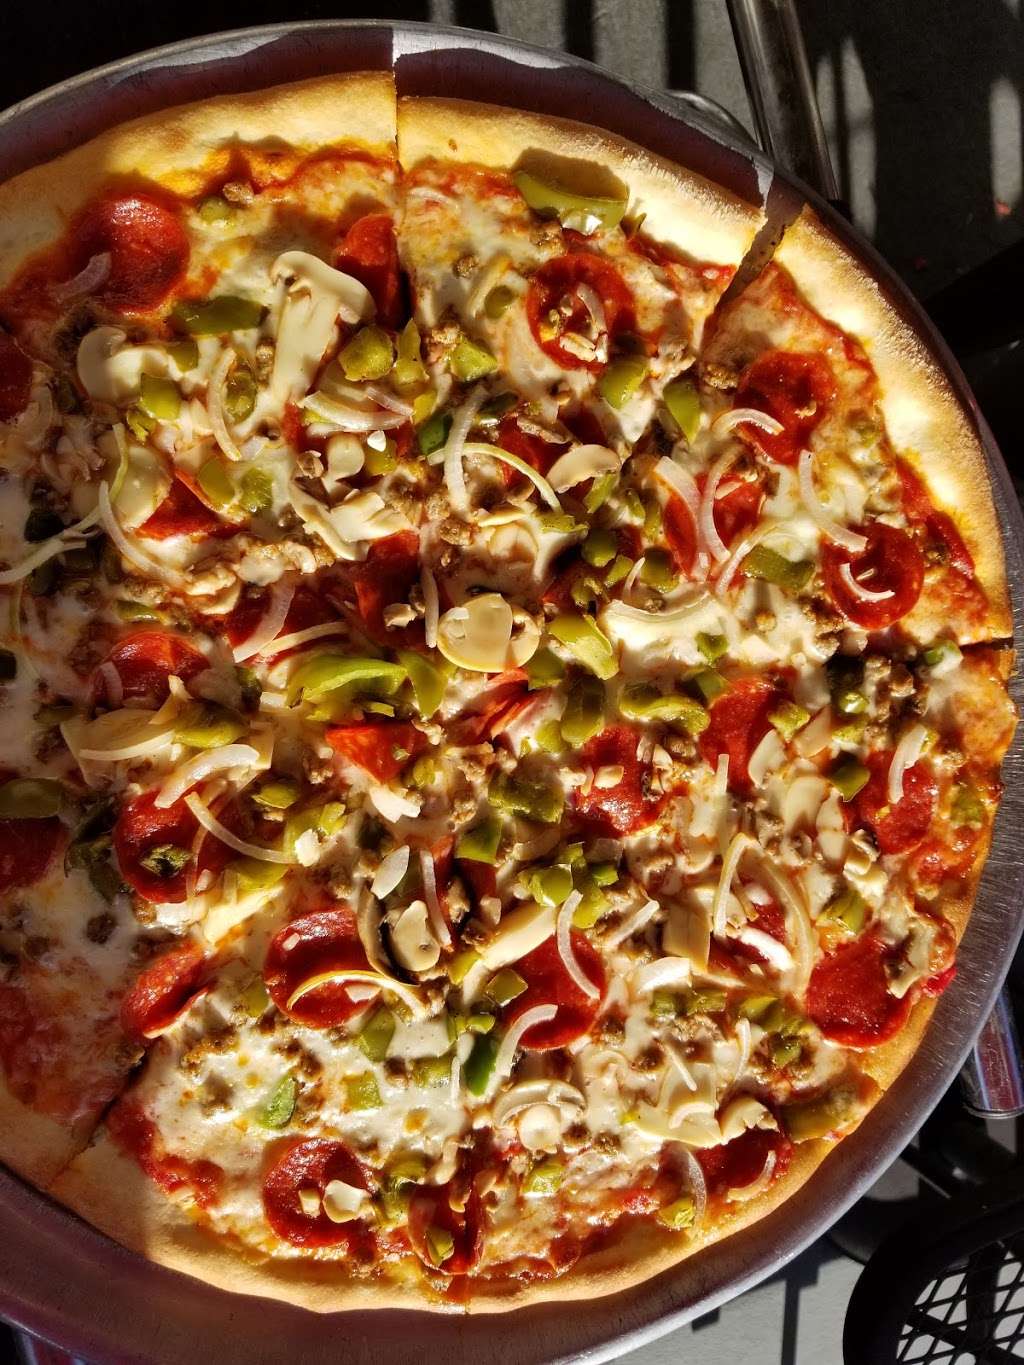 Gaetanos Pizza | 200 North St, Jim Thorpe, PA 18229 | Phone: (570) 325-9411